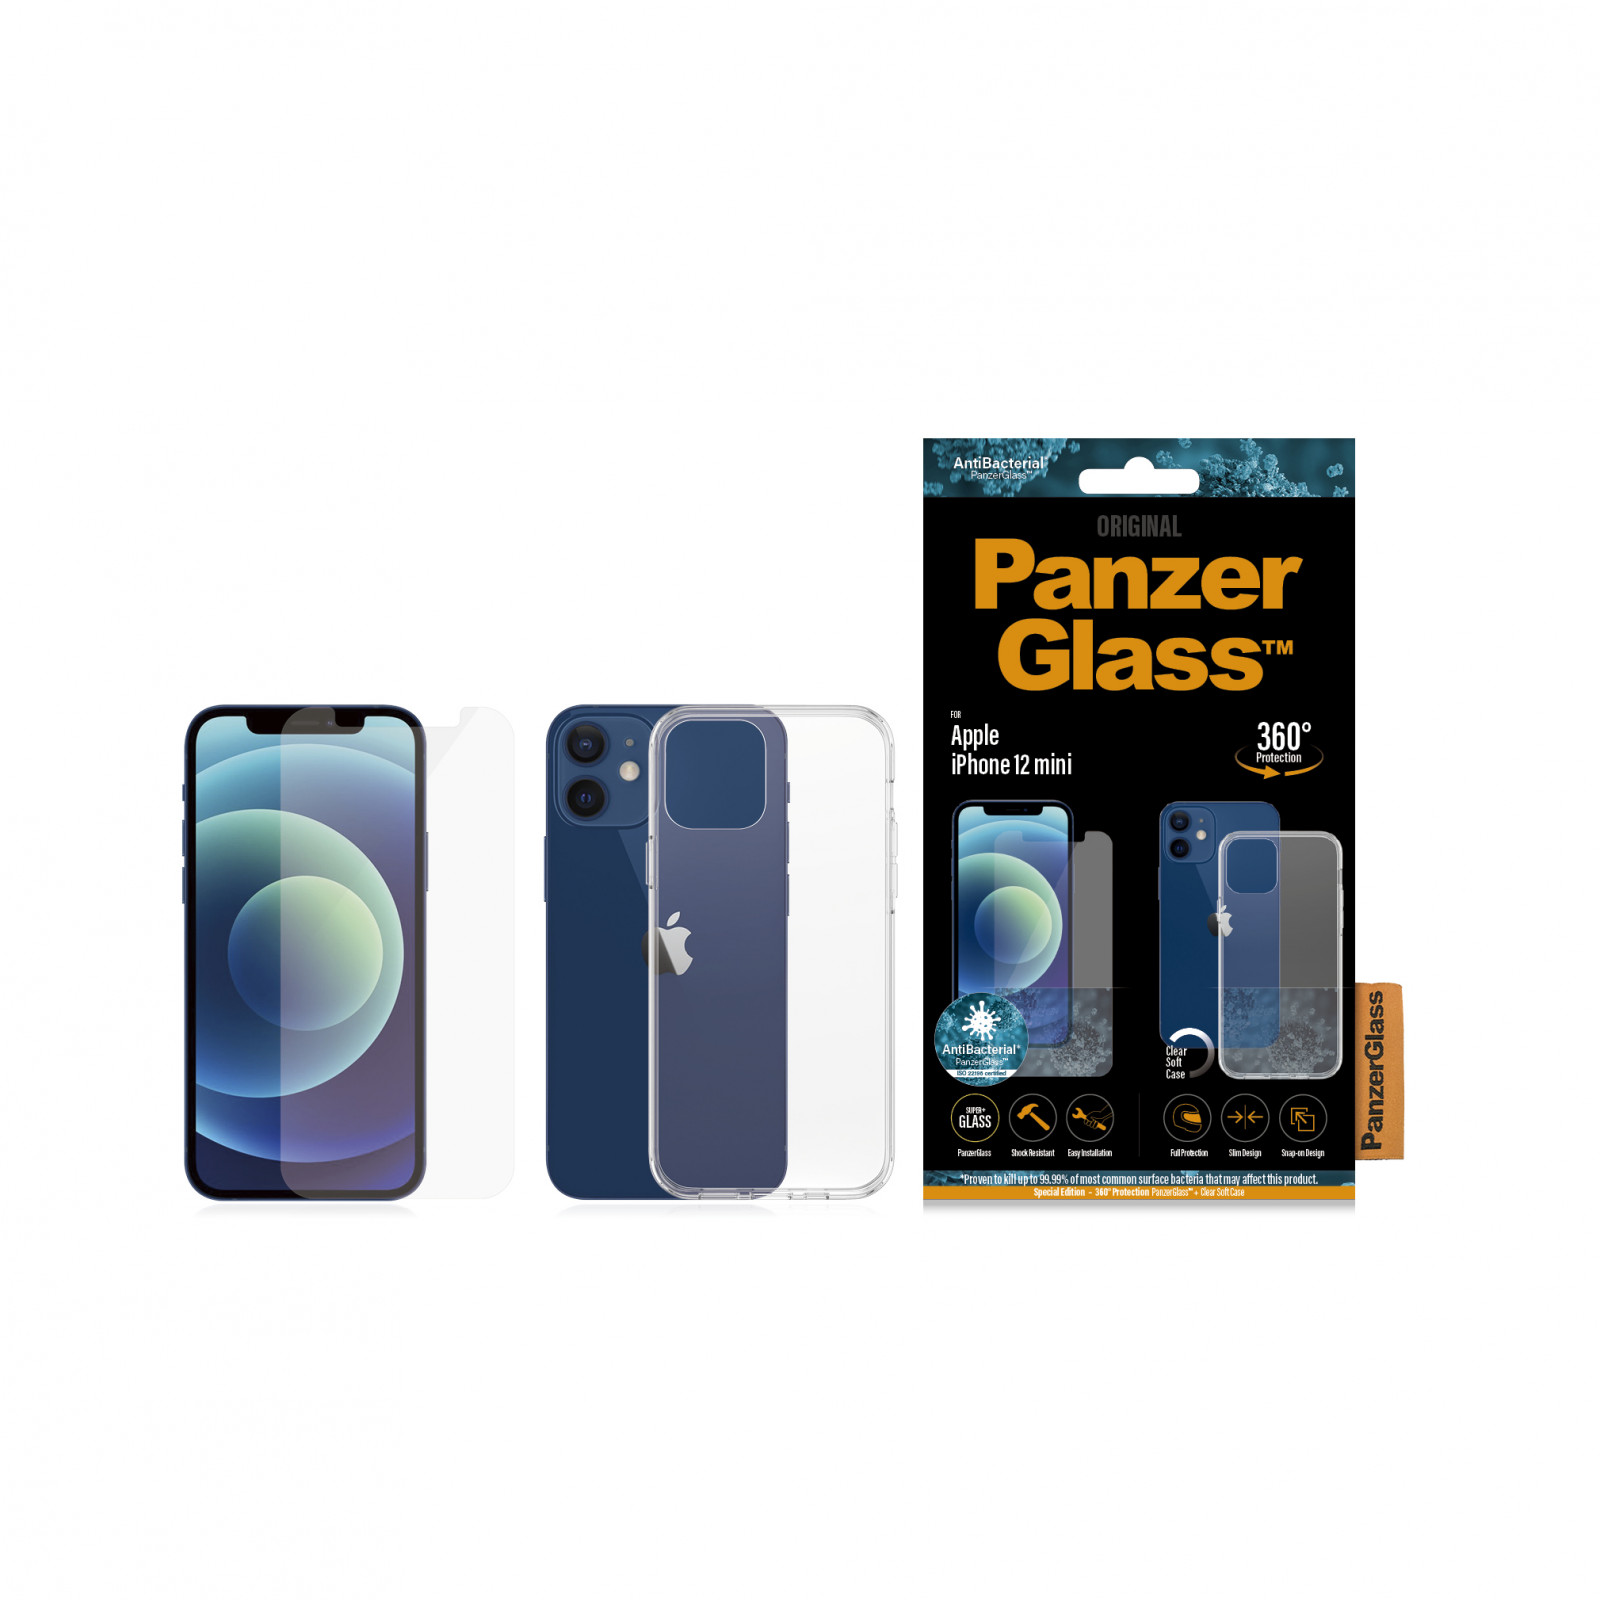 Стъклен протектор + Гръб Iphone 12 mini PanzerGlass, Antibacterial